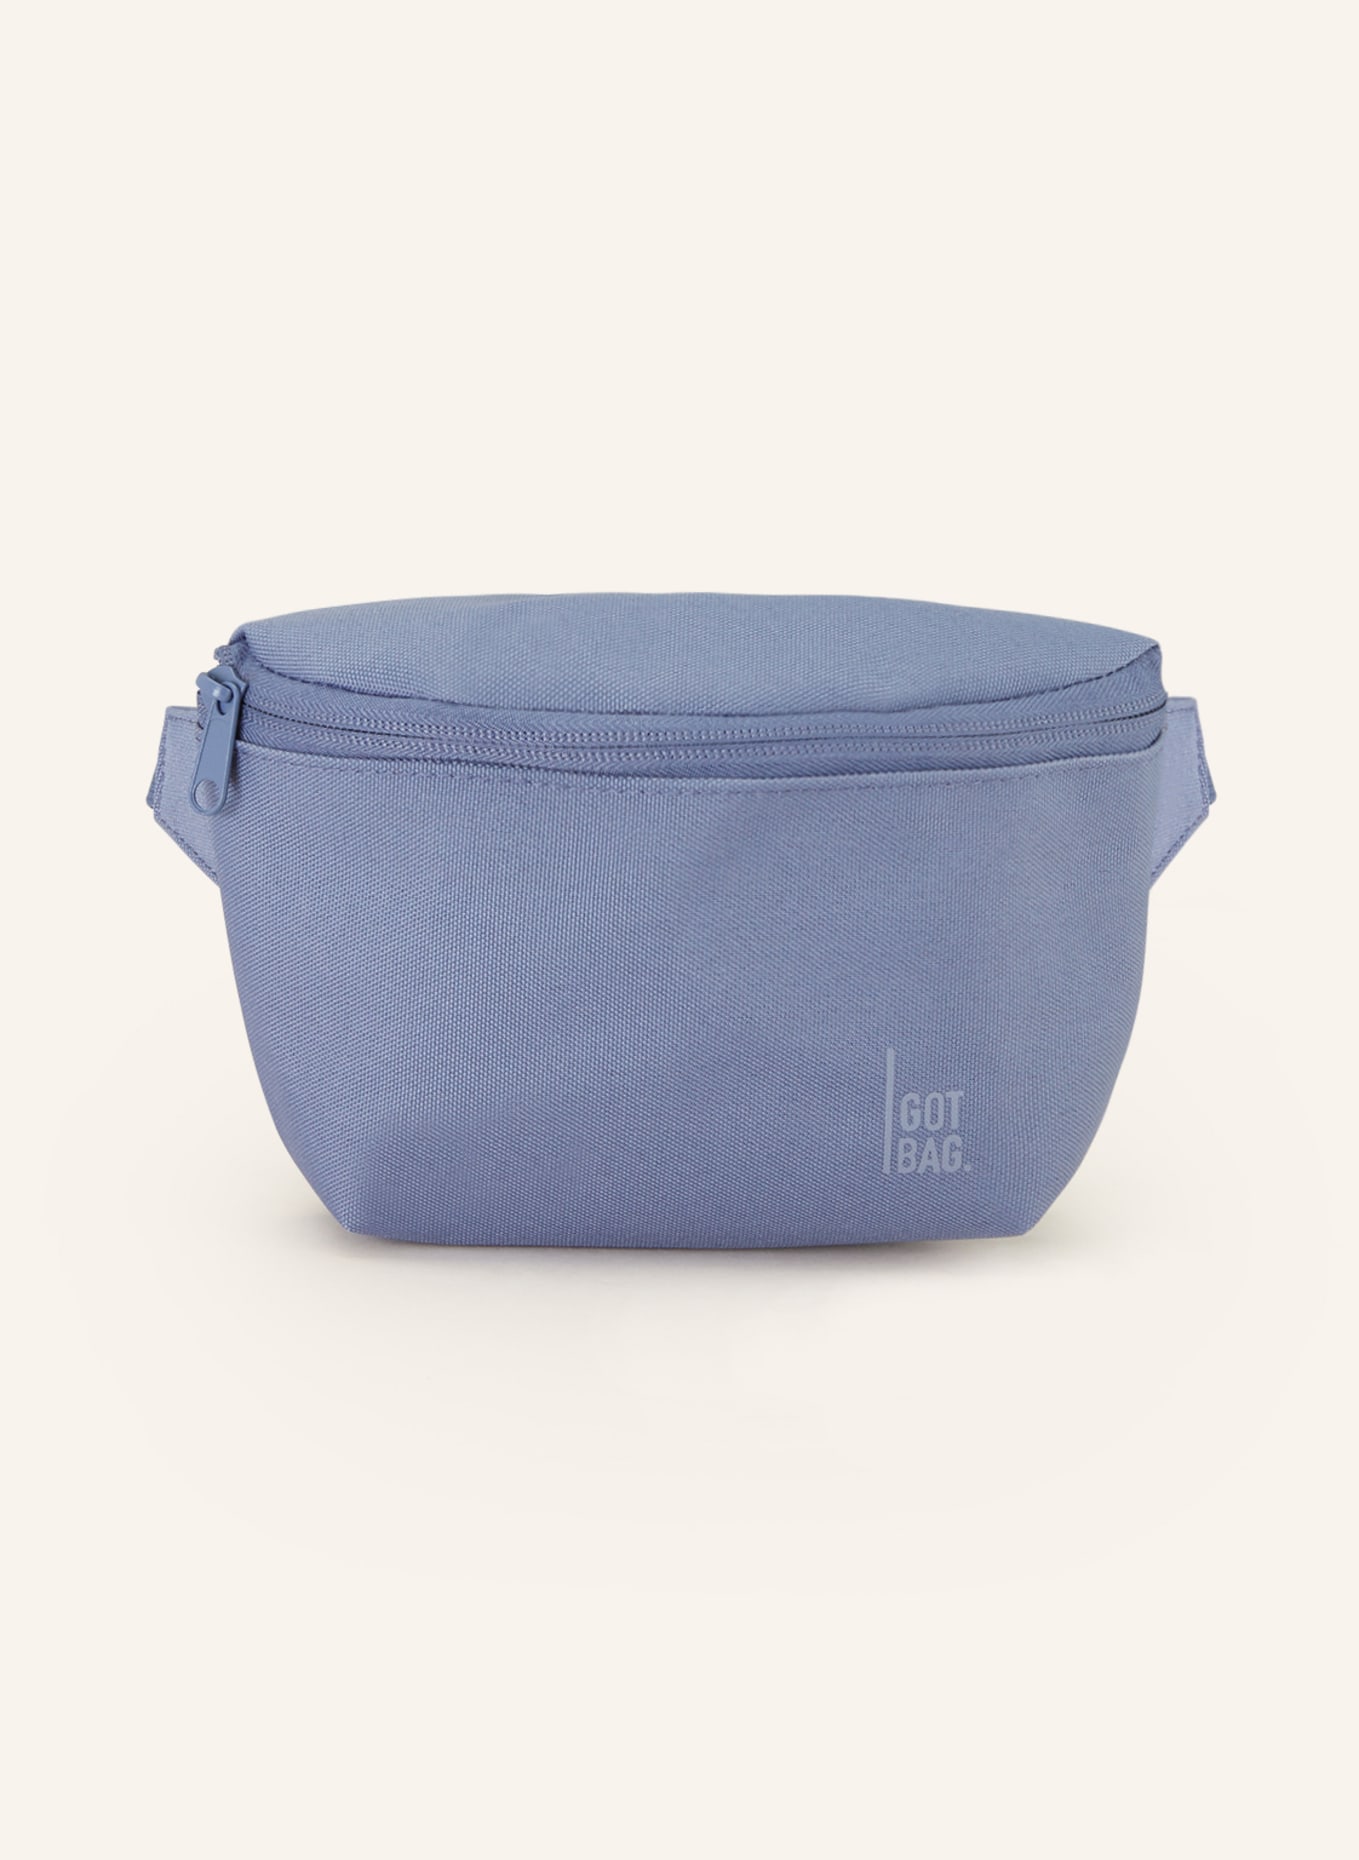 GOT BAG Waist bag, Color: BLUE (Image 1)